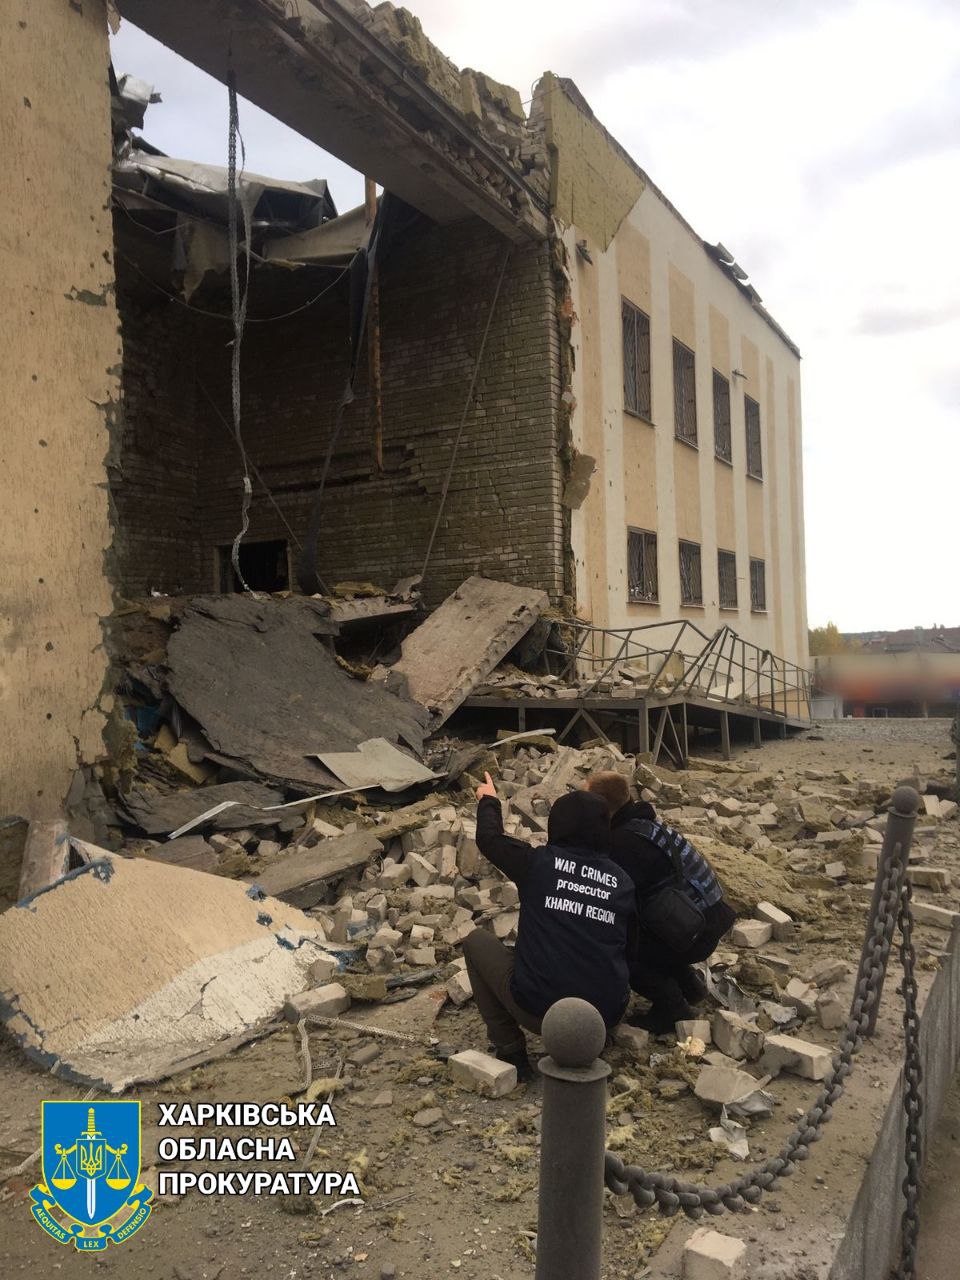 Областная прокуратура опубликовала фото последствий сегодняшнего обстрела Купянска Харьковской области